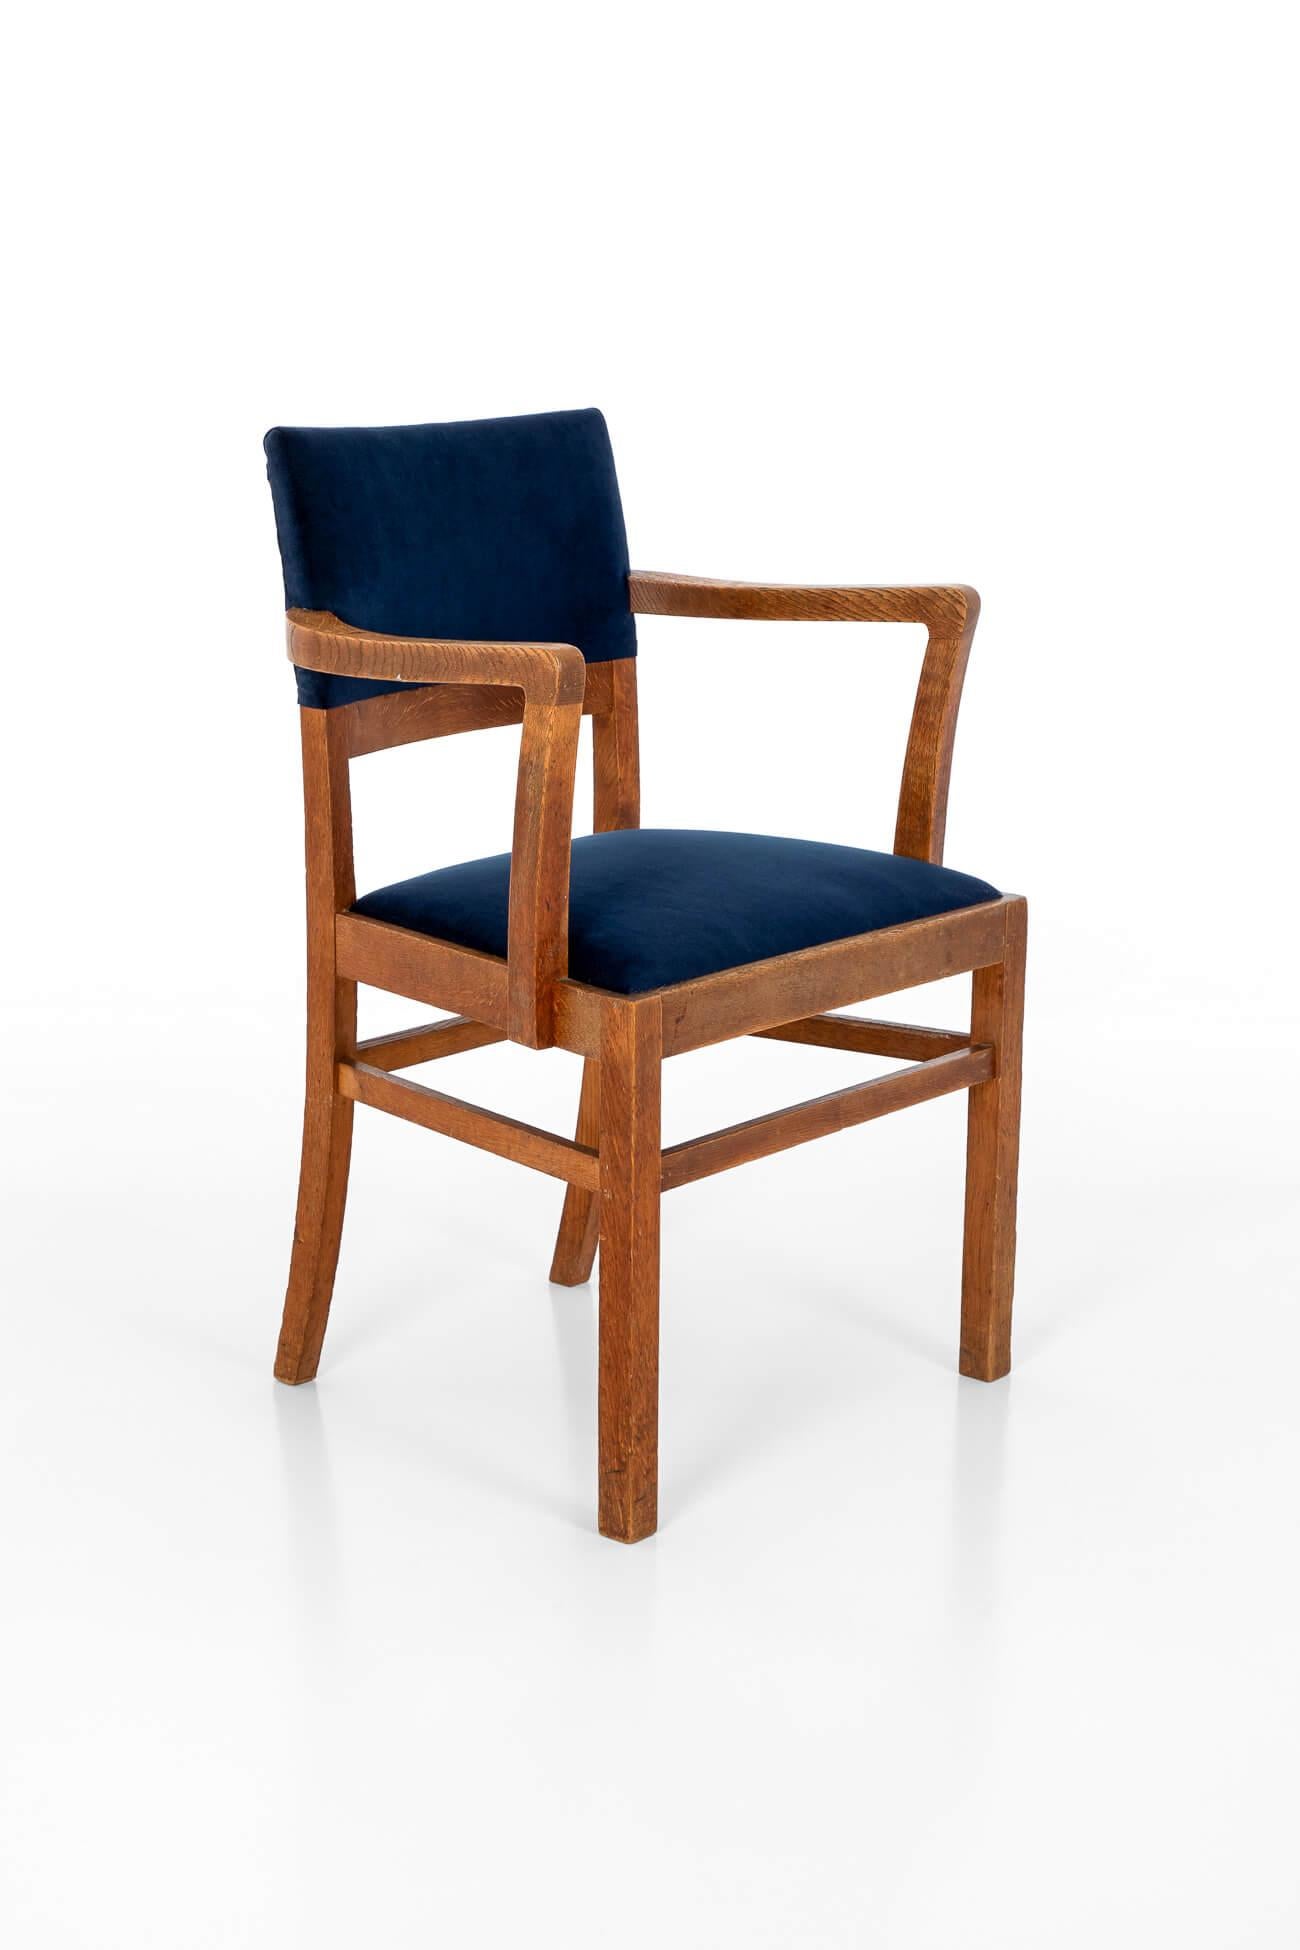 Ein hervorragender Heal's und Son Ltd Arts and Crafts Beistellstuhl aus Eiche.

Hohe Rückenlehne mit geschwungenen Armen über einem großzügigen und bequemen Sitzkissen. Die beiden geraden Säbelbeine sind mit peripheren Streben versehen.

Das